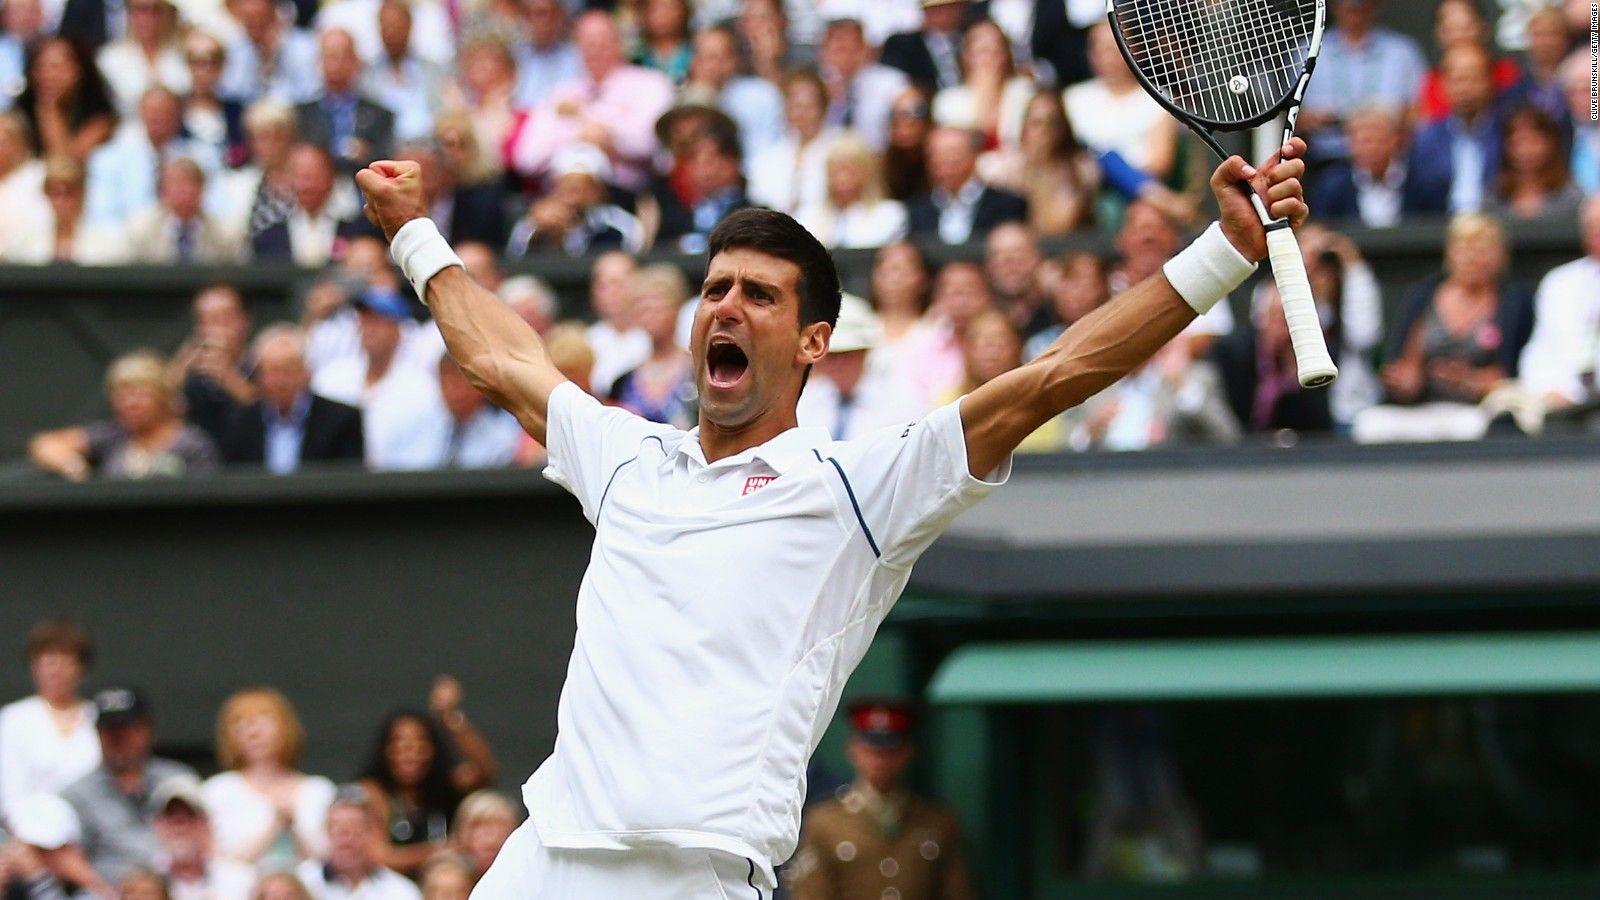 Wimbledon 2015: Djokovic beats Federer for third title